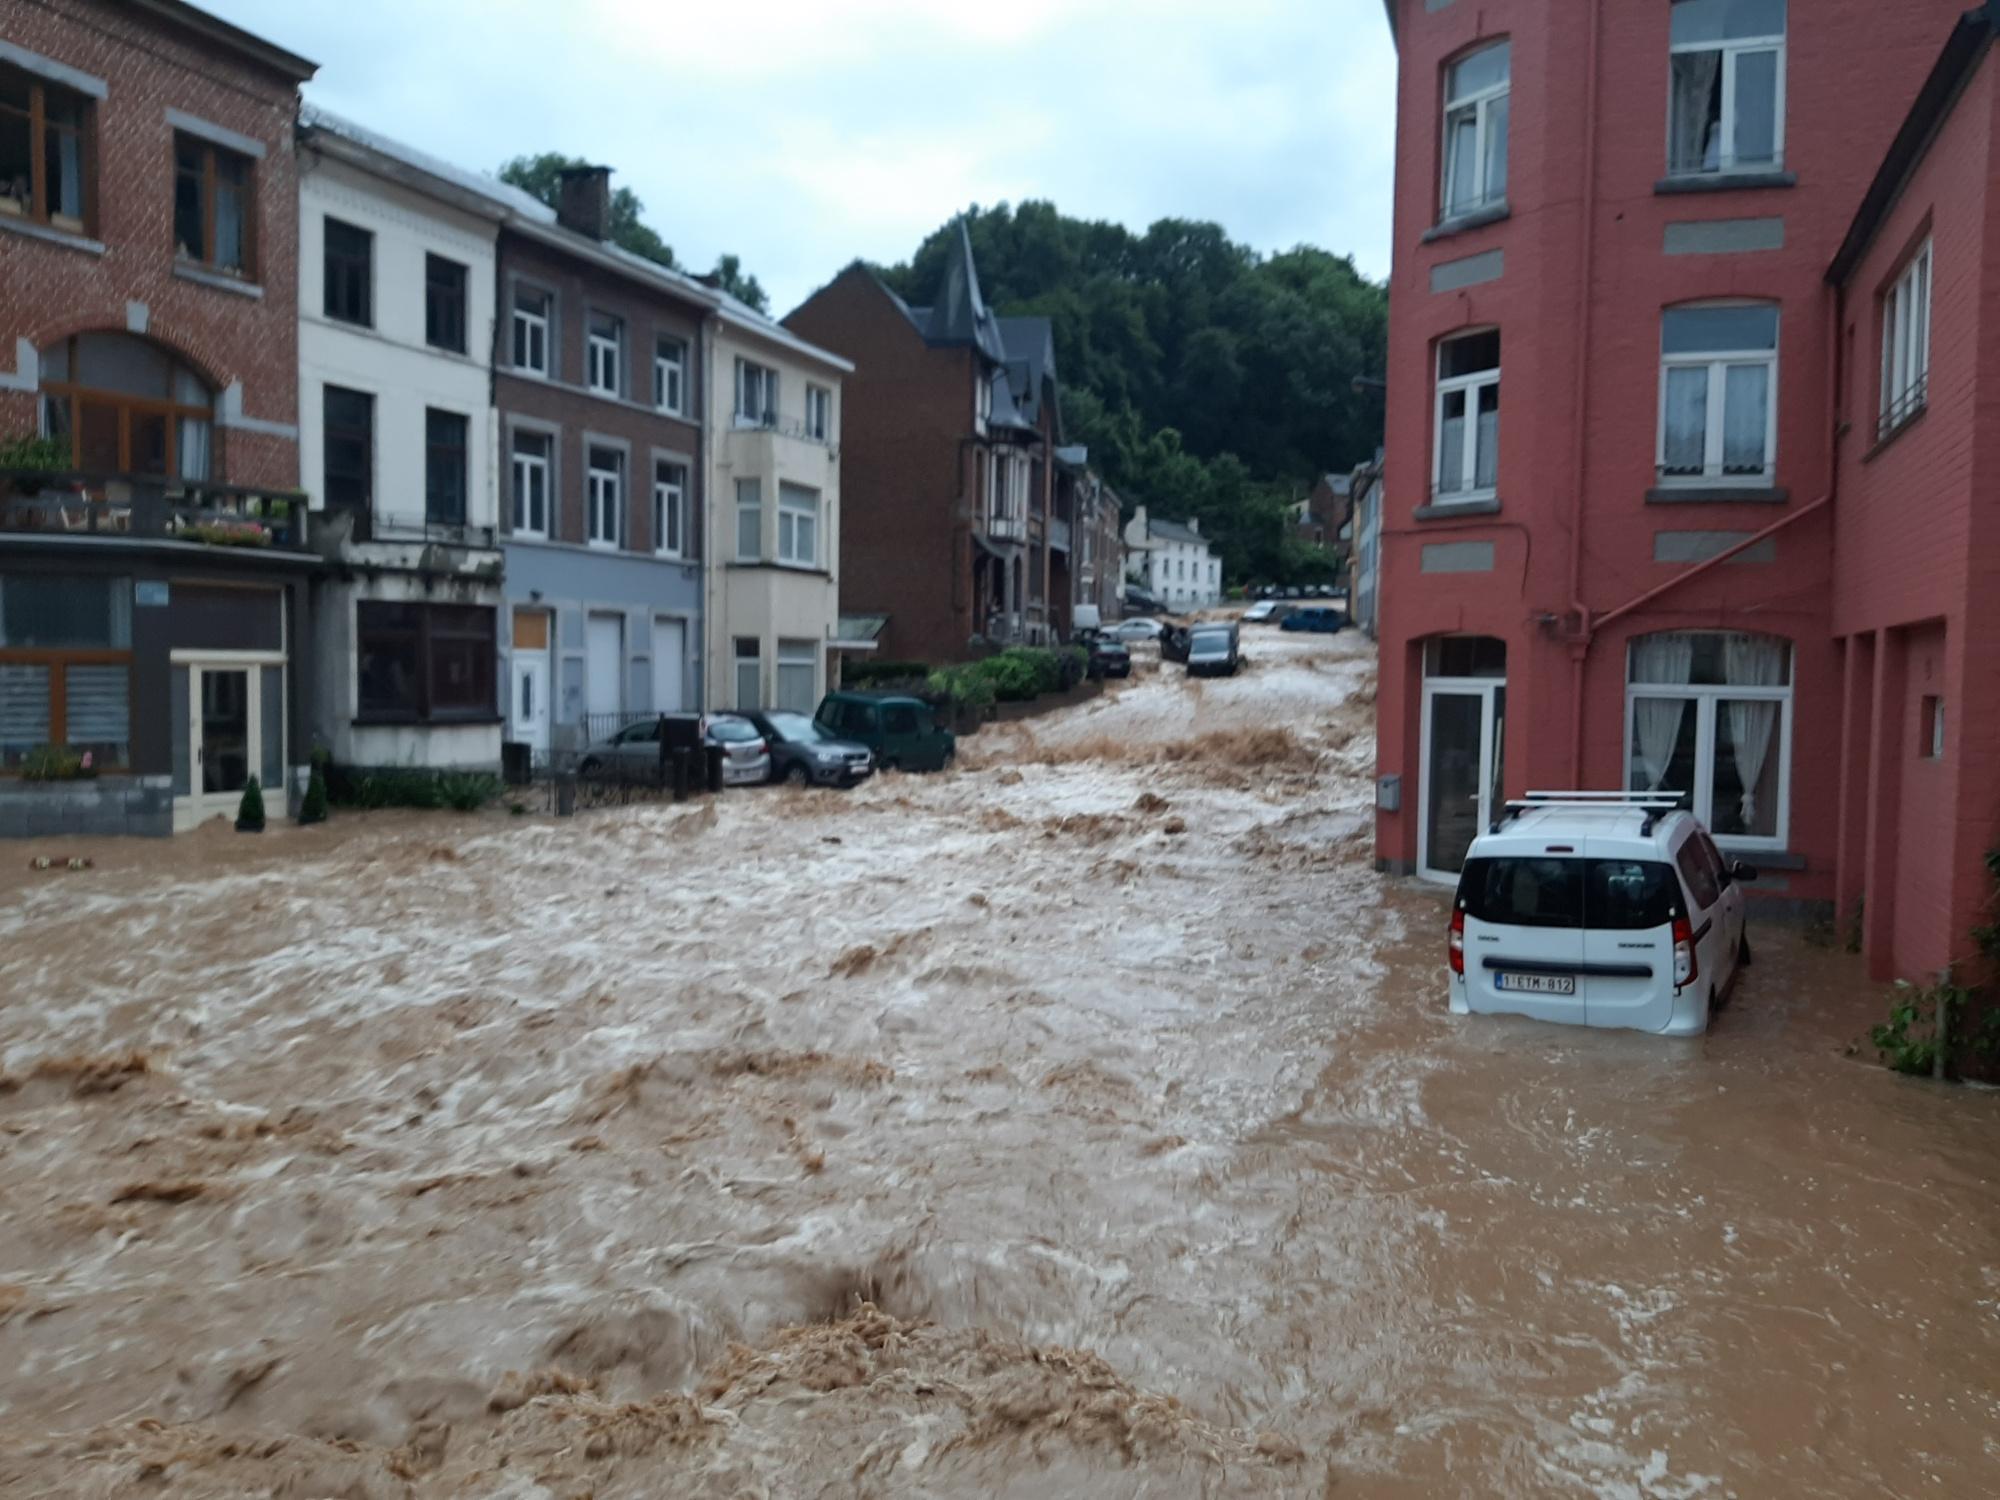 Intempéries: la province de Namur fortement touchée, accalmie pour la suite de la nuit